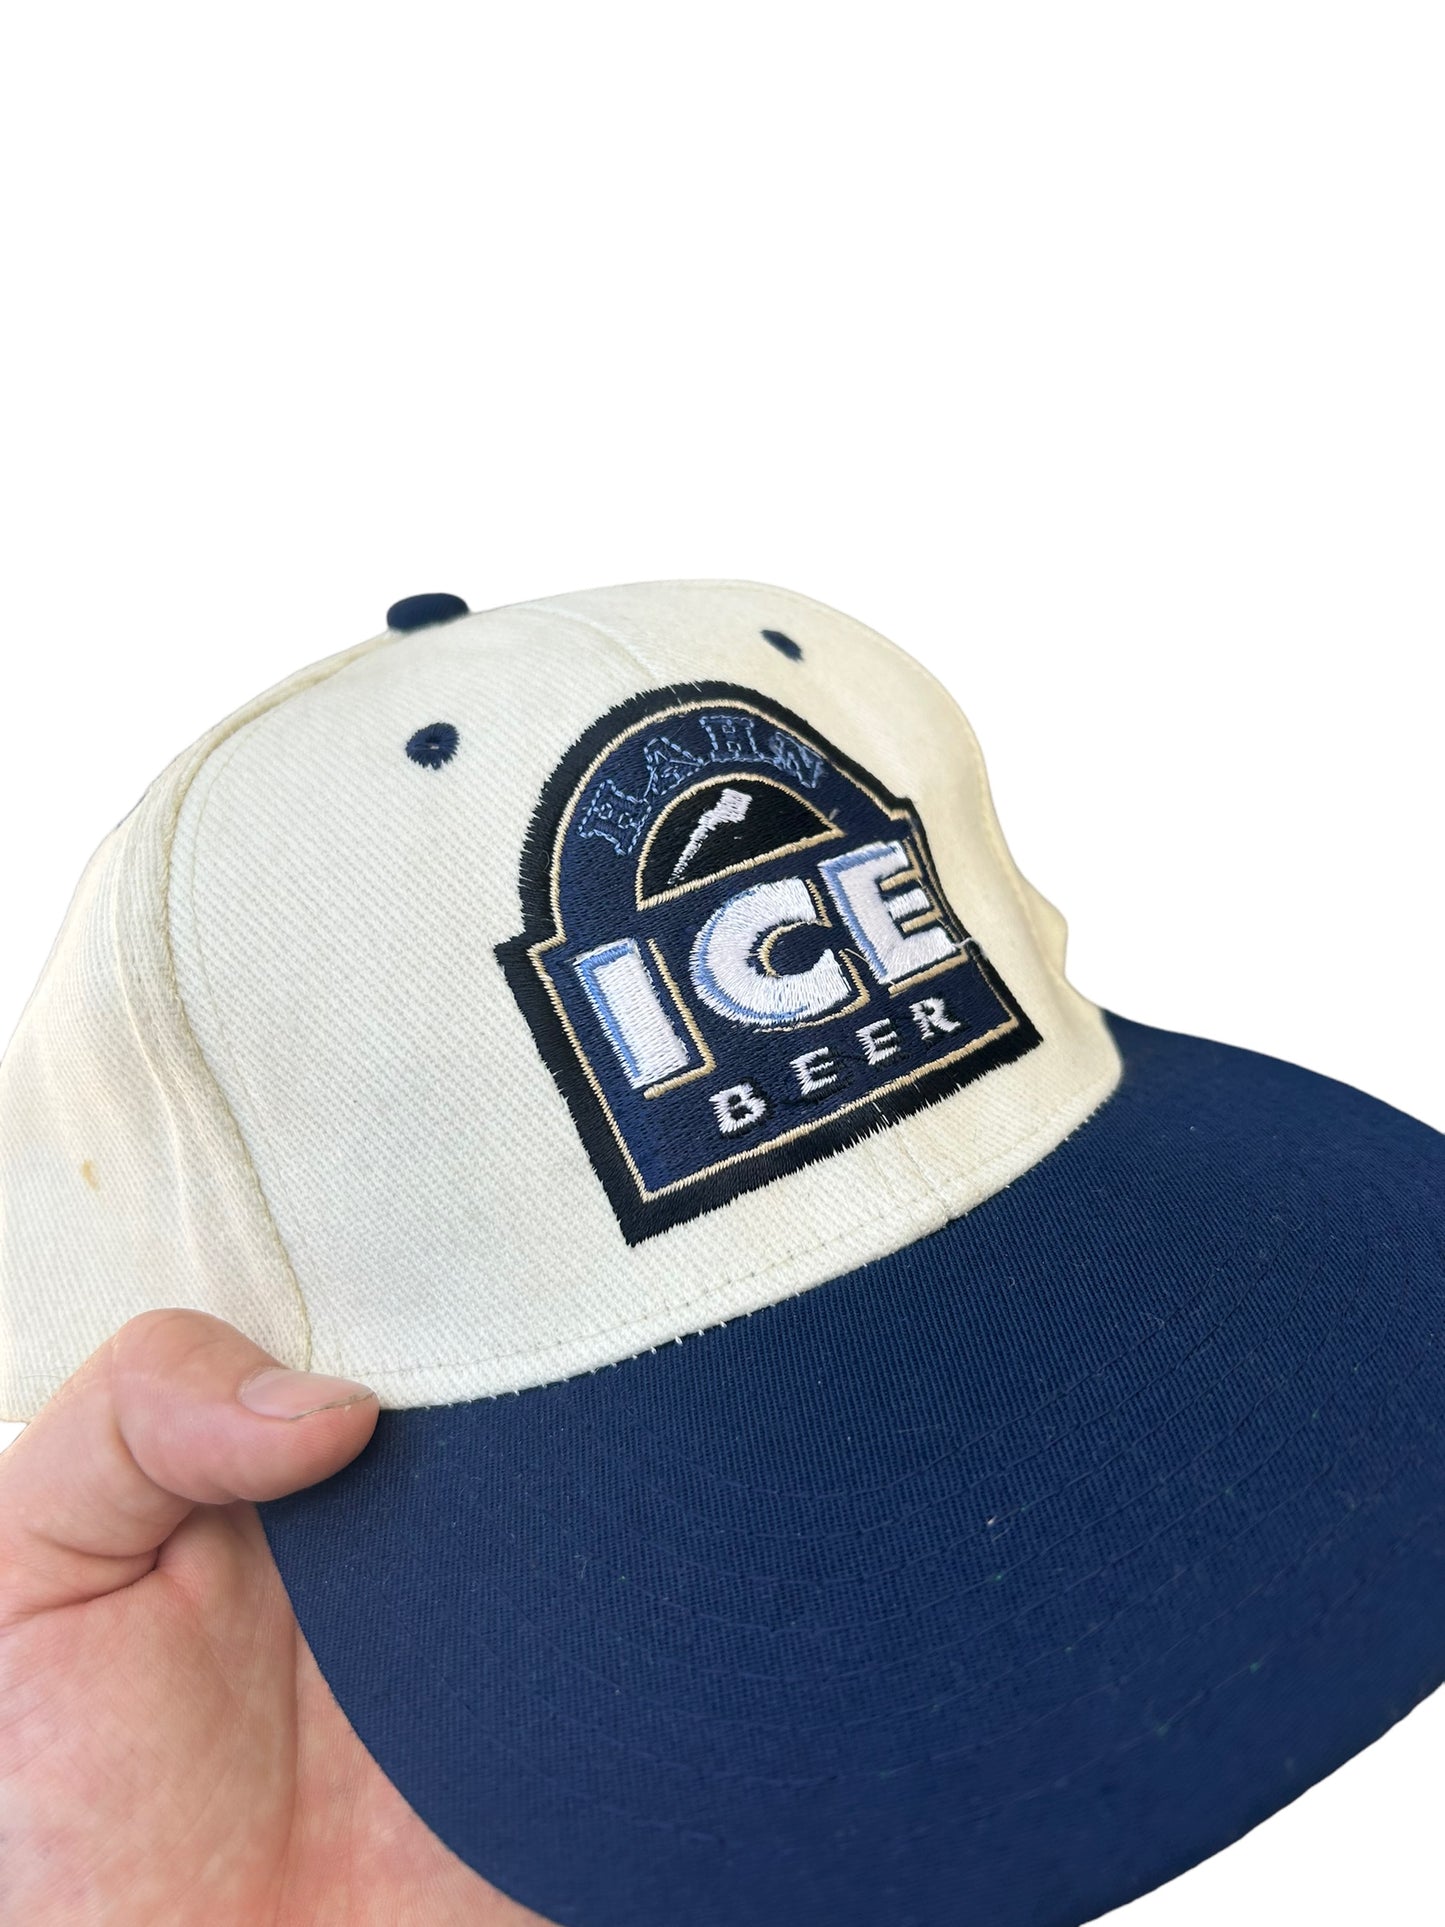 Vintage Hahn Ice Beer Cap